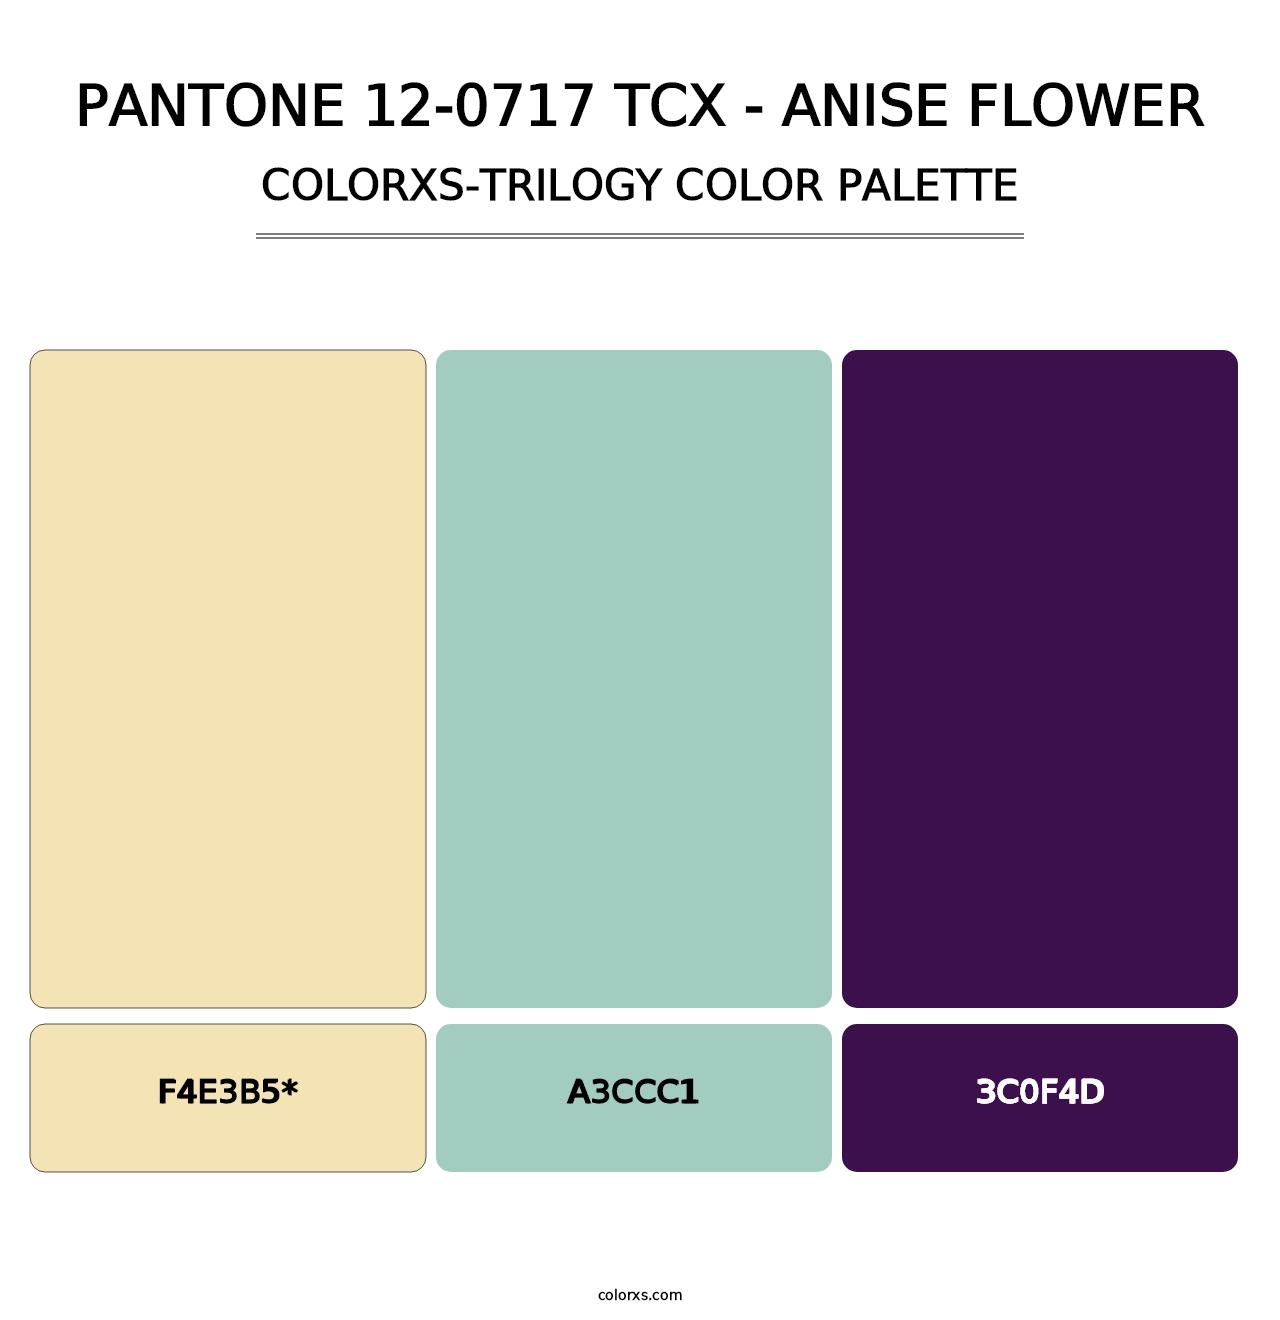 PANTONE 12-0717 TCX - Anise Flower - Colorxs Trilogy Palette